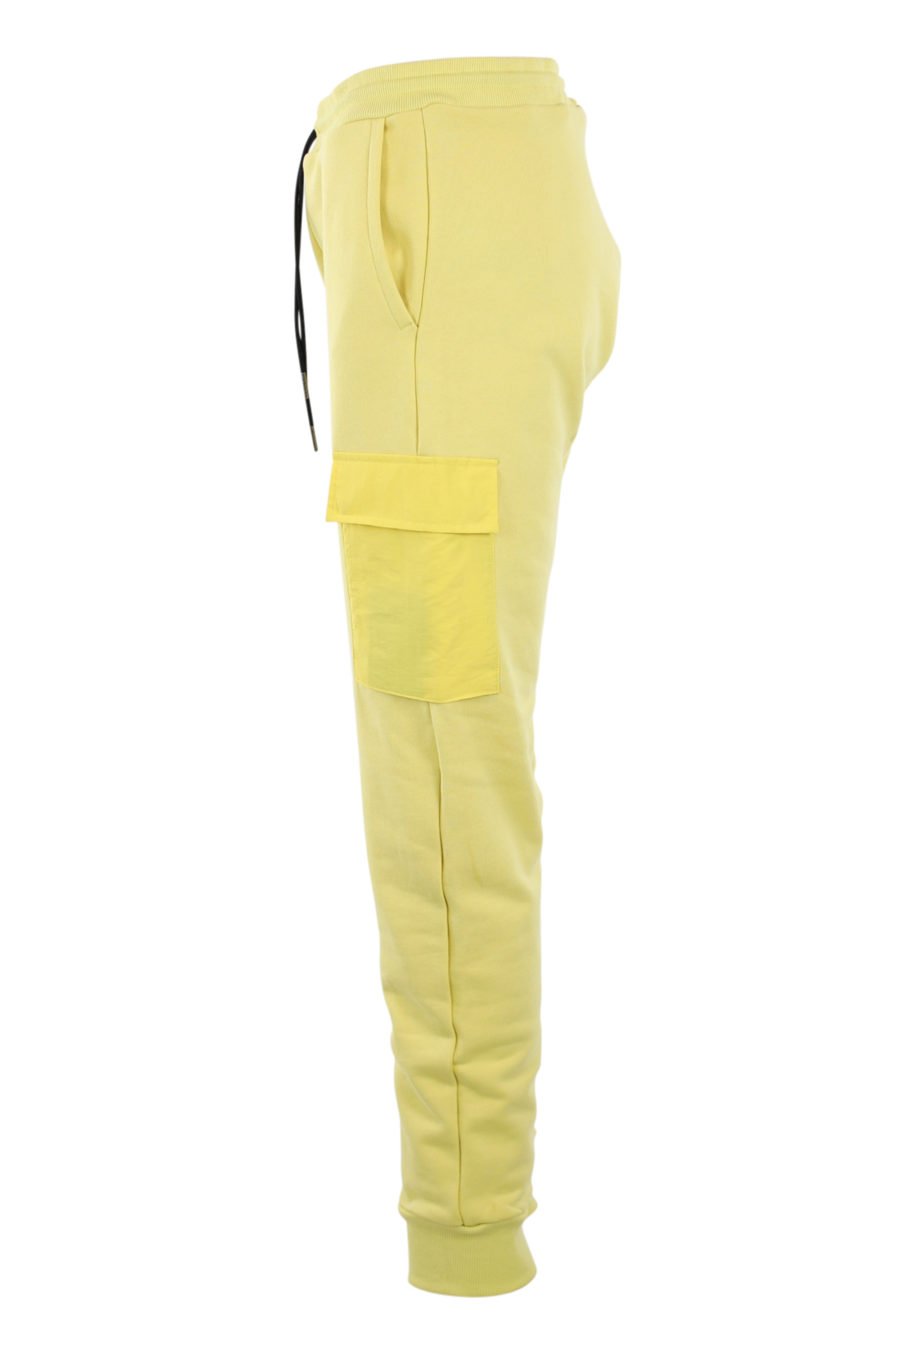 Pantalón de chándal amarillo con bolsillos - IMG 0909